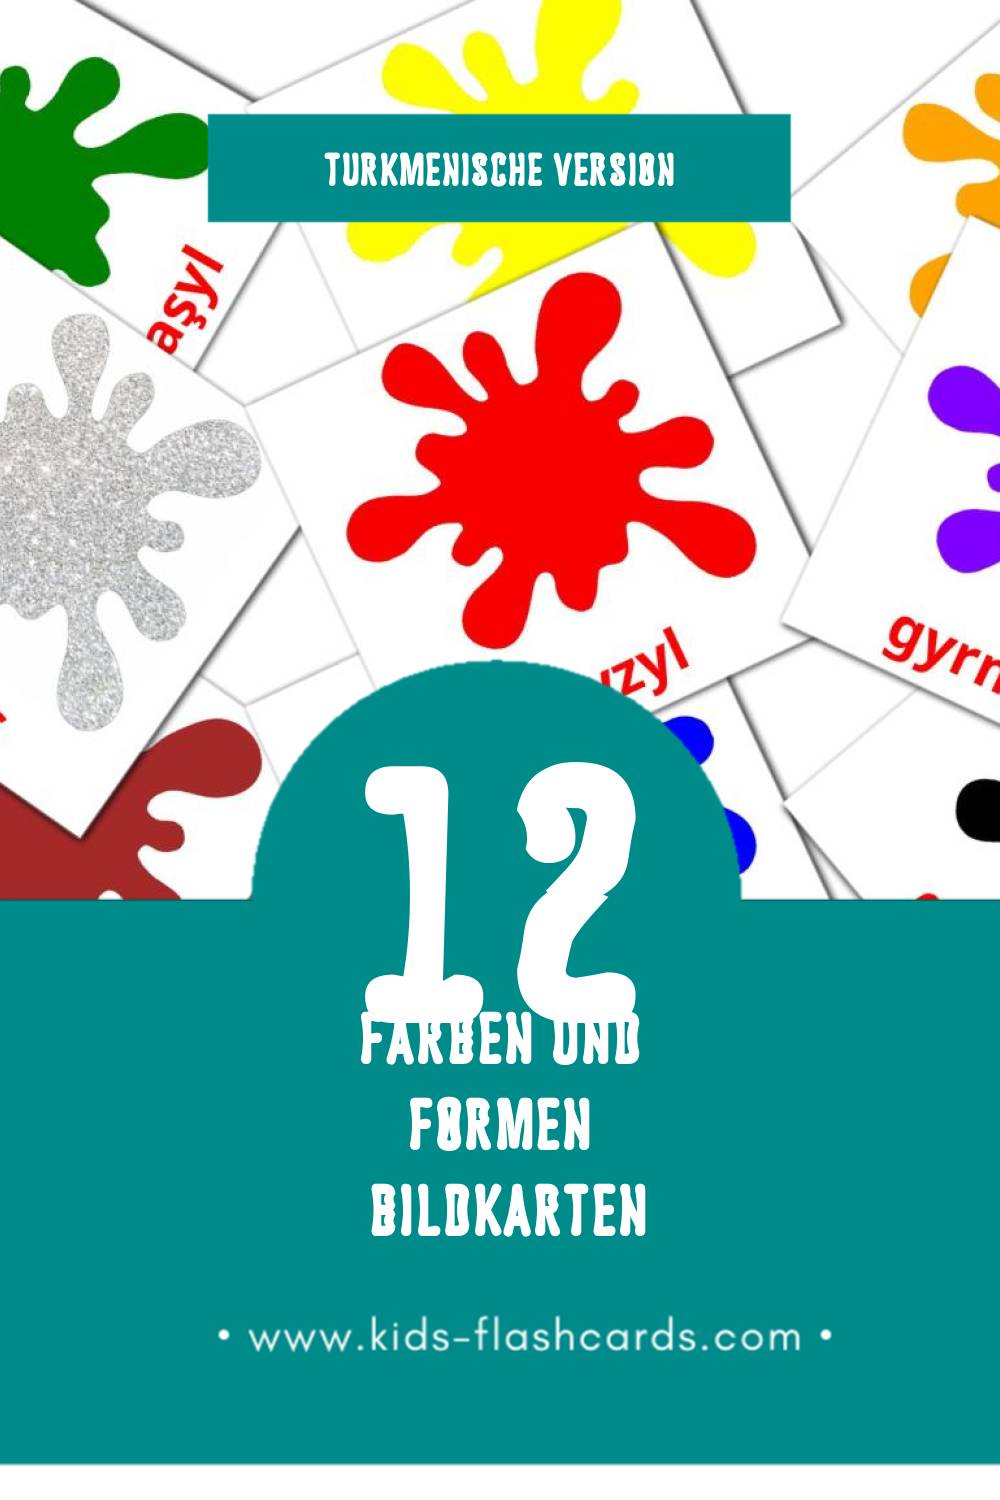 Visual Reňkler we şekiller Flashcards für Kleinkinder (12 Karten in Turkmenisch)